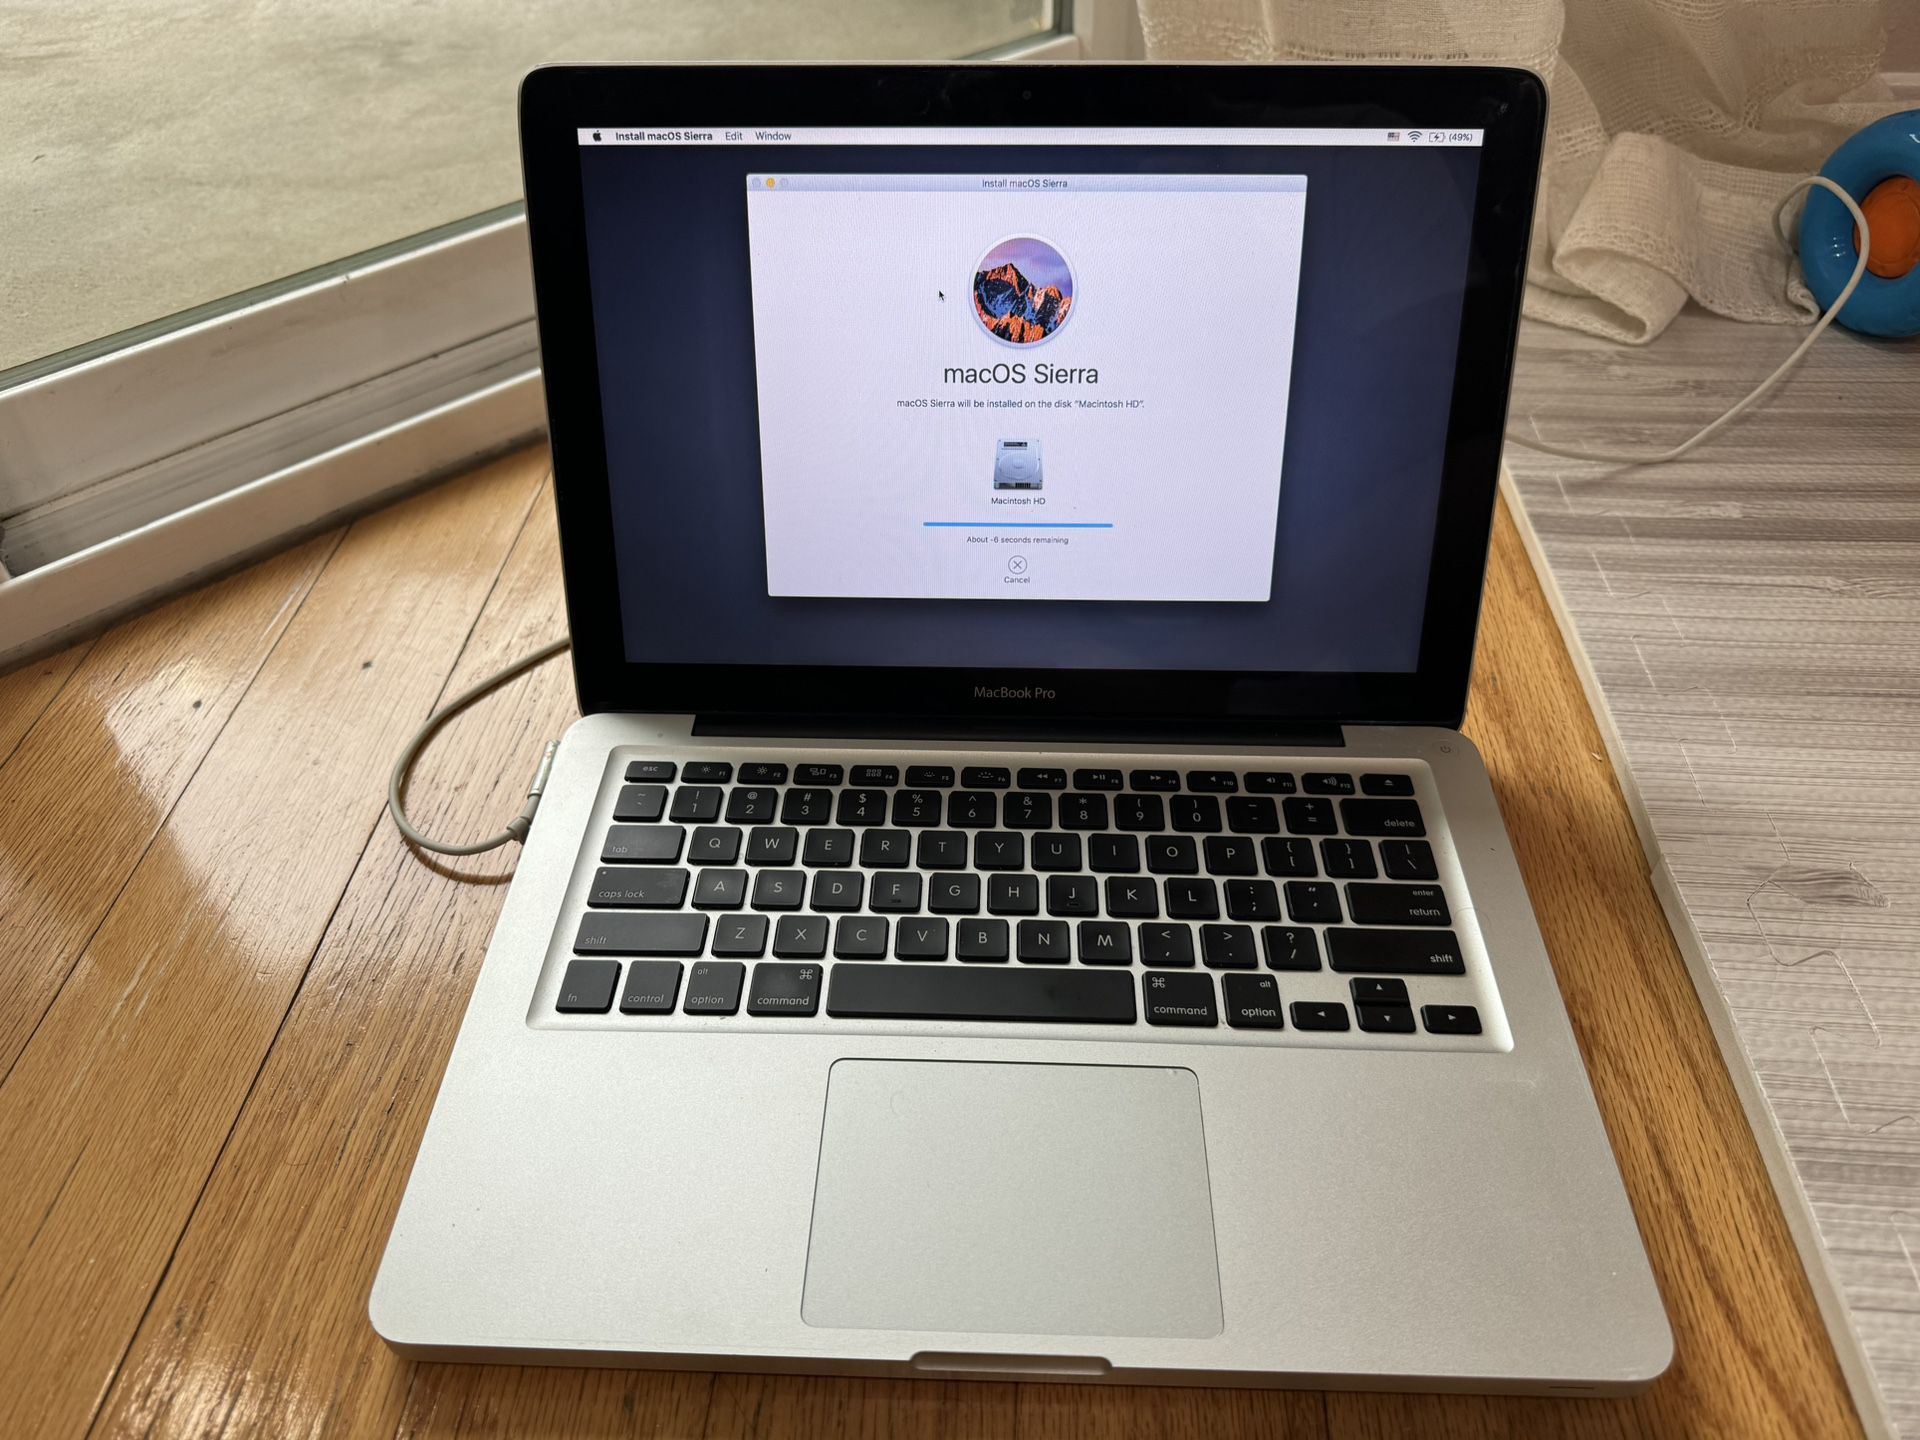 MacBook Pro 13 Inch (2011)